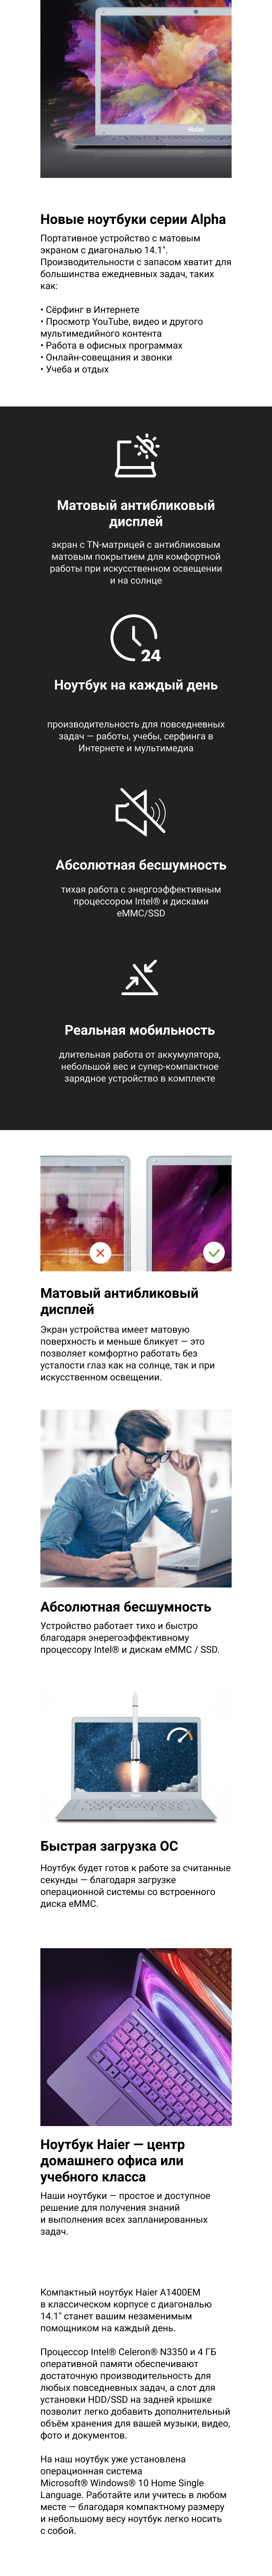 Ноутбук Haier U1500em Купить В Москве